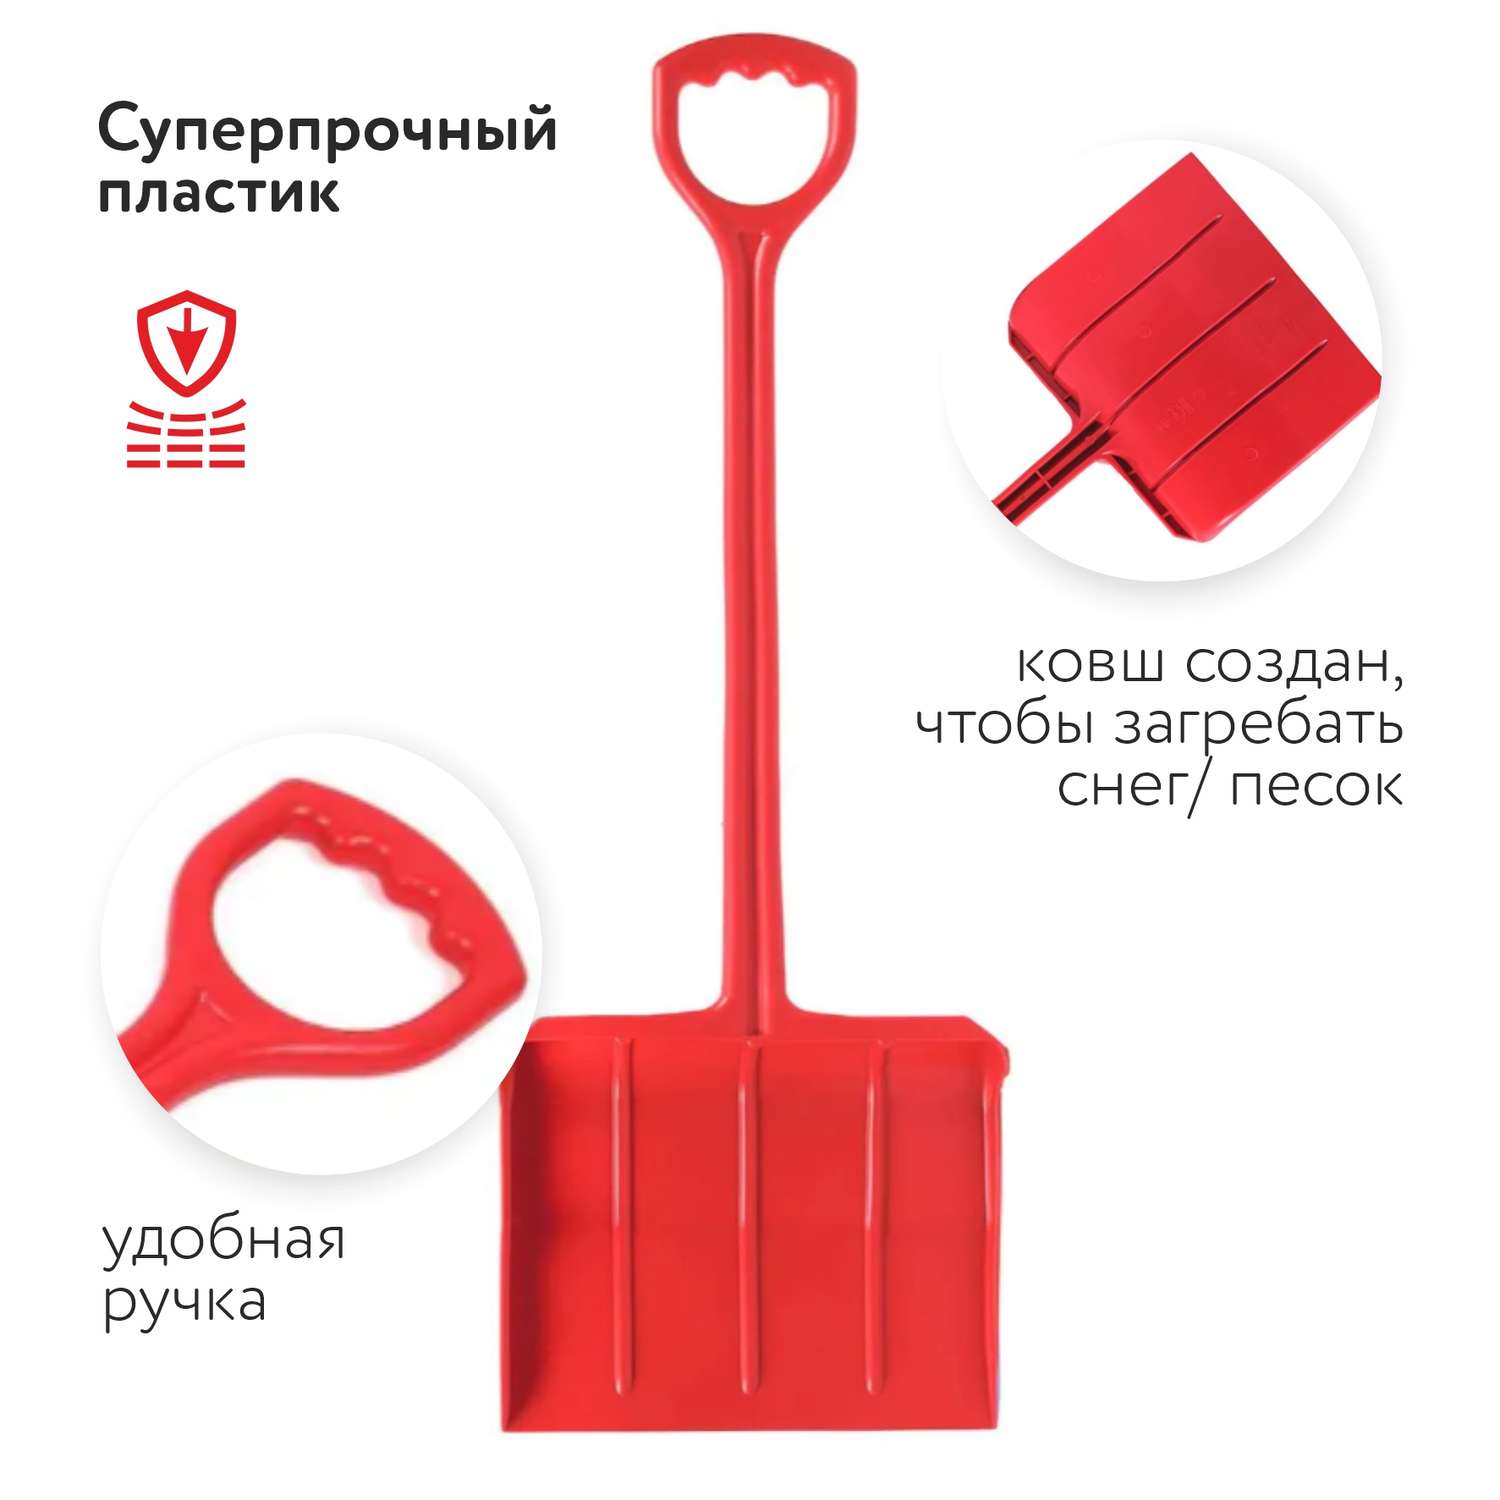 Лопата для снега Zebratoys Красная 15-10195DM-К  по цене 349 ₽ в .